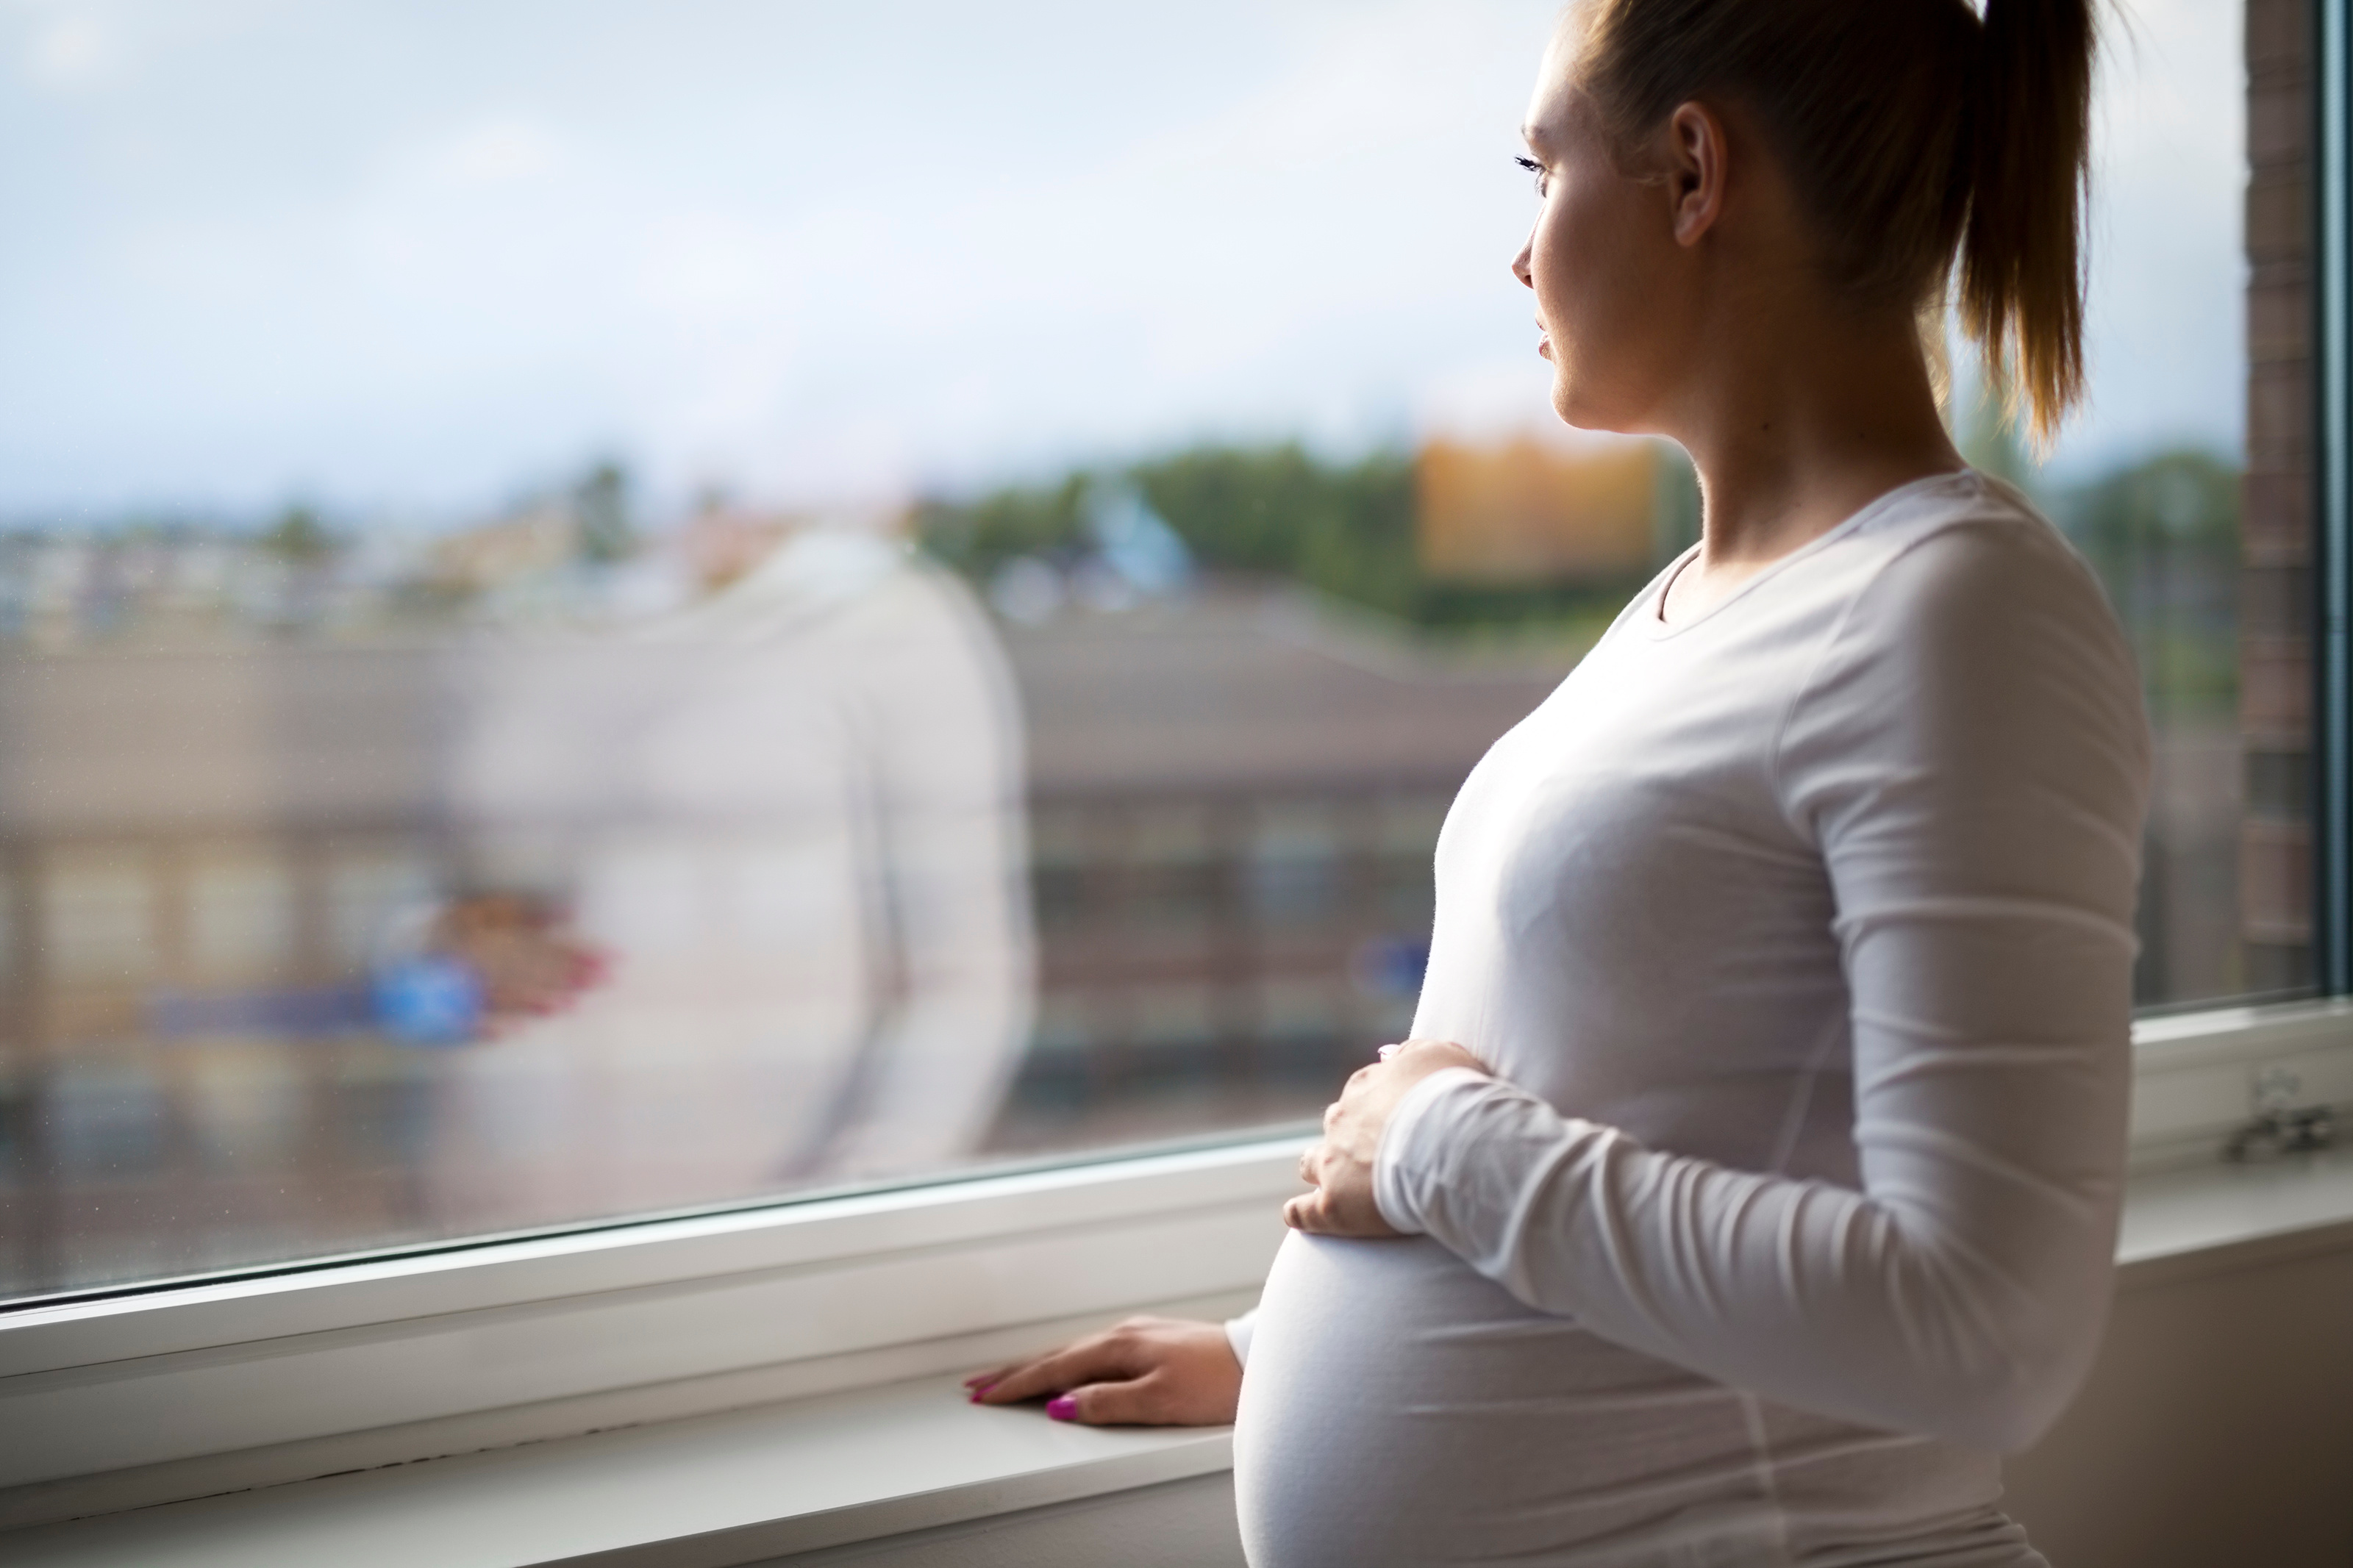 Être stressée, anxieuse ou déprimée pendant la grossesse pourrait impacter le développement du cerveau de l'enfant à naître. © kjekol, Adobe Stock